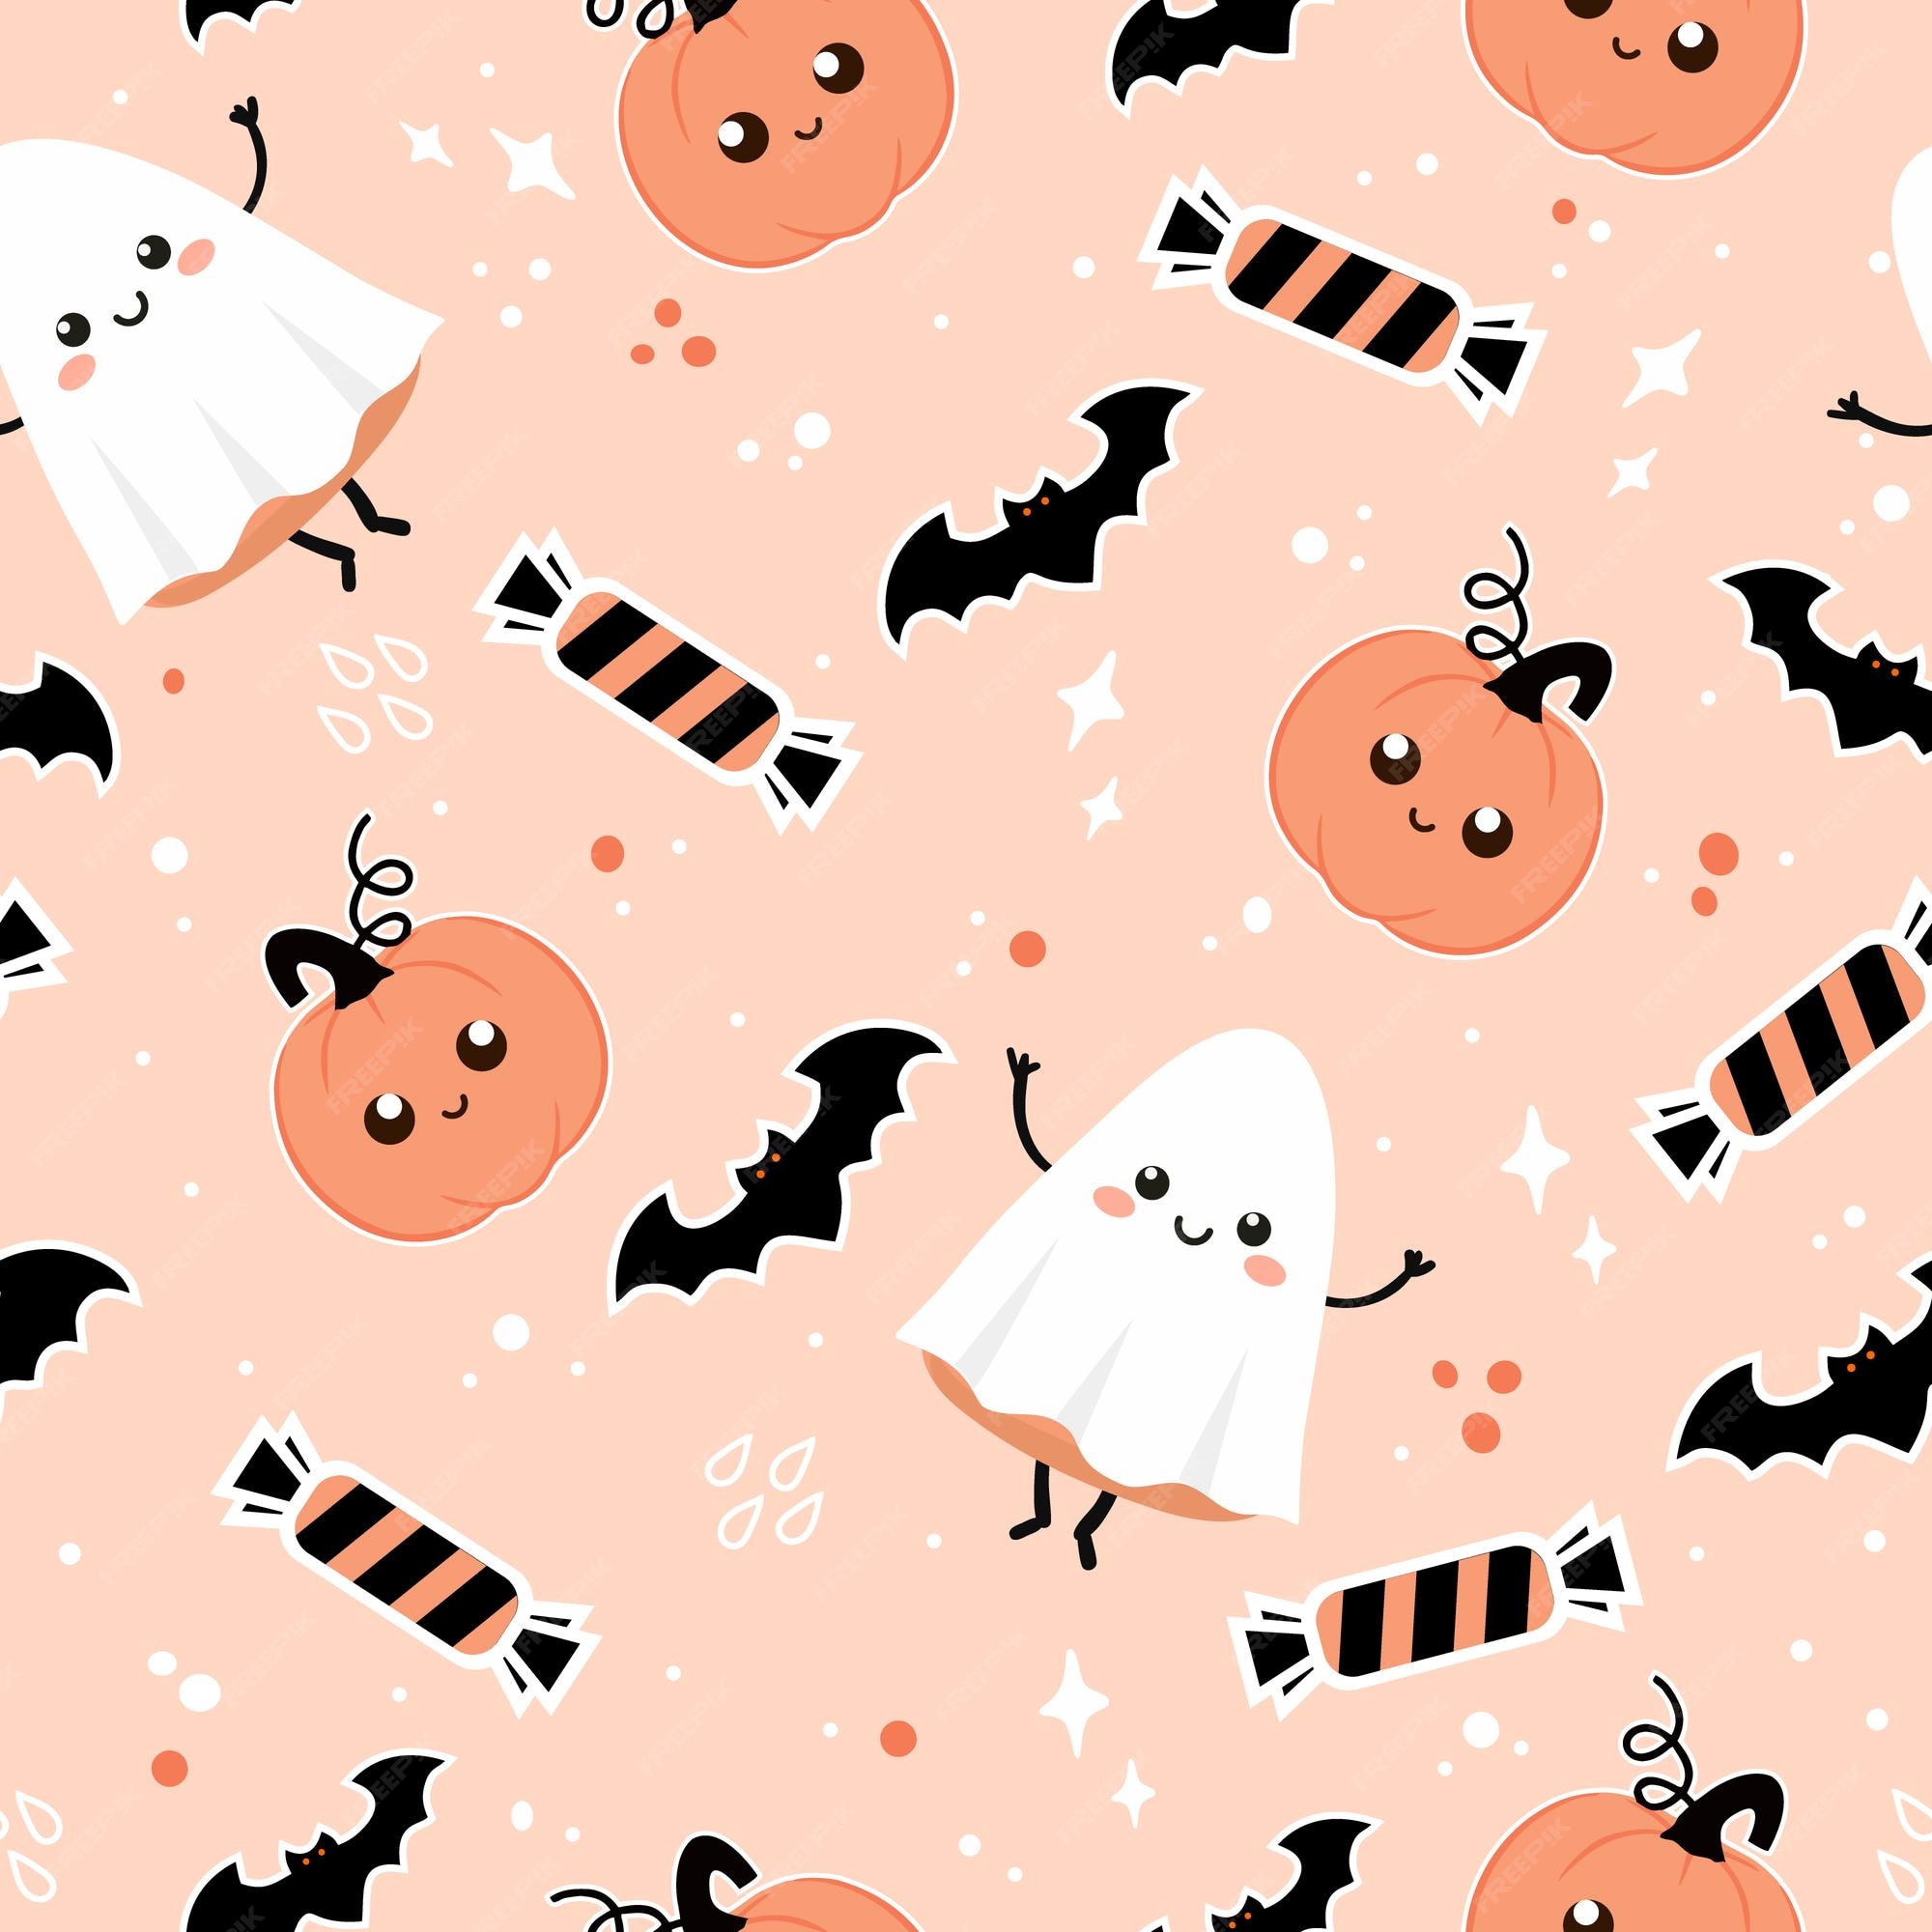 Mẫu nền dễ thương Halloween: Chào mừng Halloween với mẫu nền dễ thương! Thiết kế mẫu nền này có hình ảnh đáng yêu và sử dụng màu sắc rực rỡ, tạo nên một không gian lễ hội vui tươi.